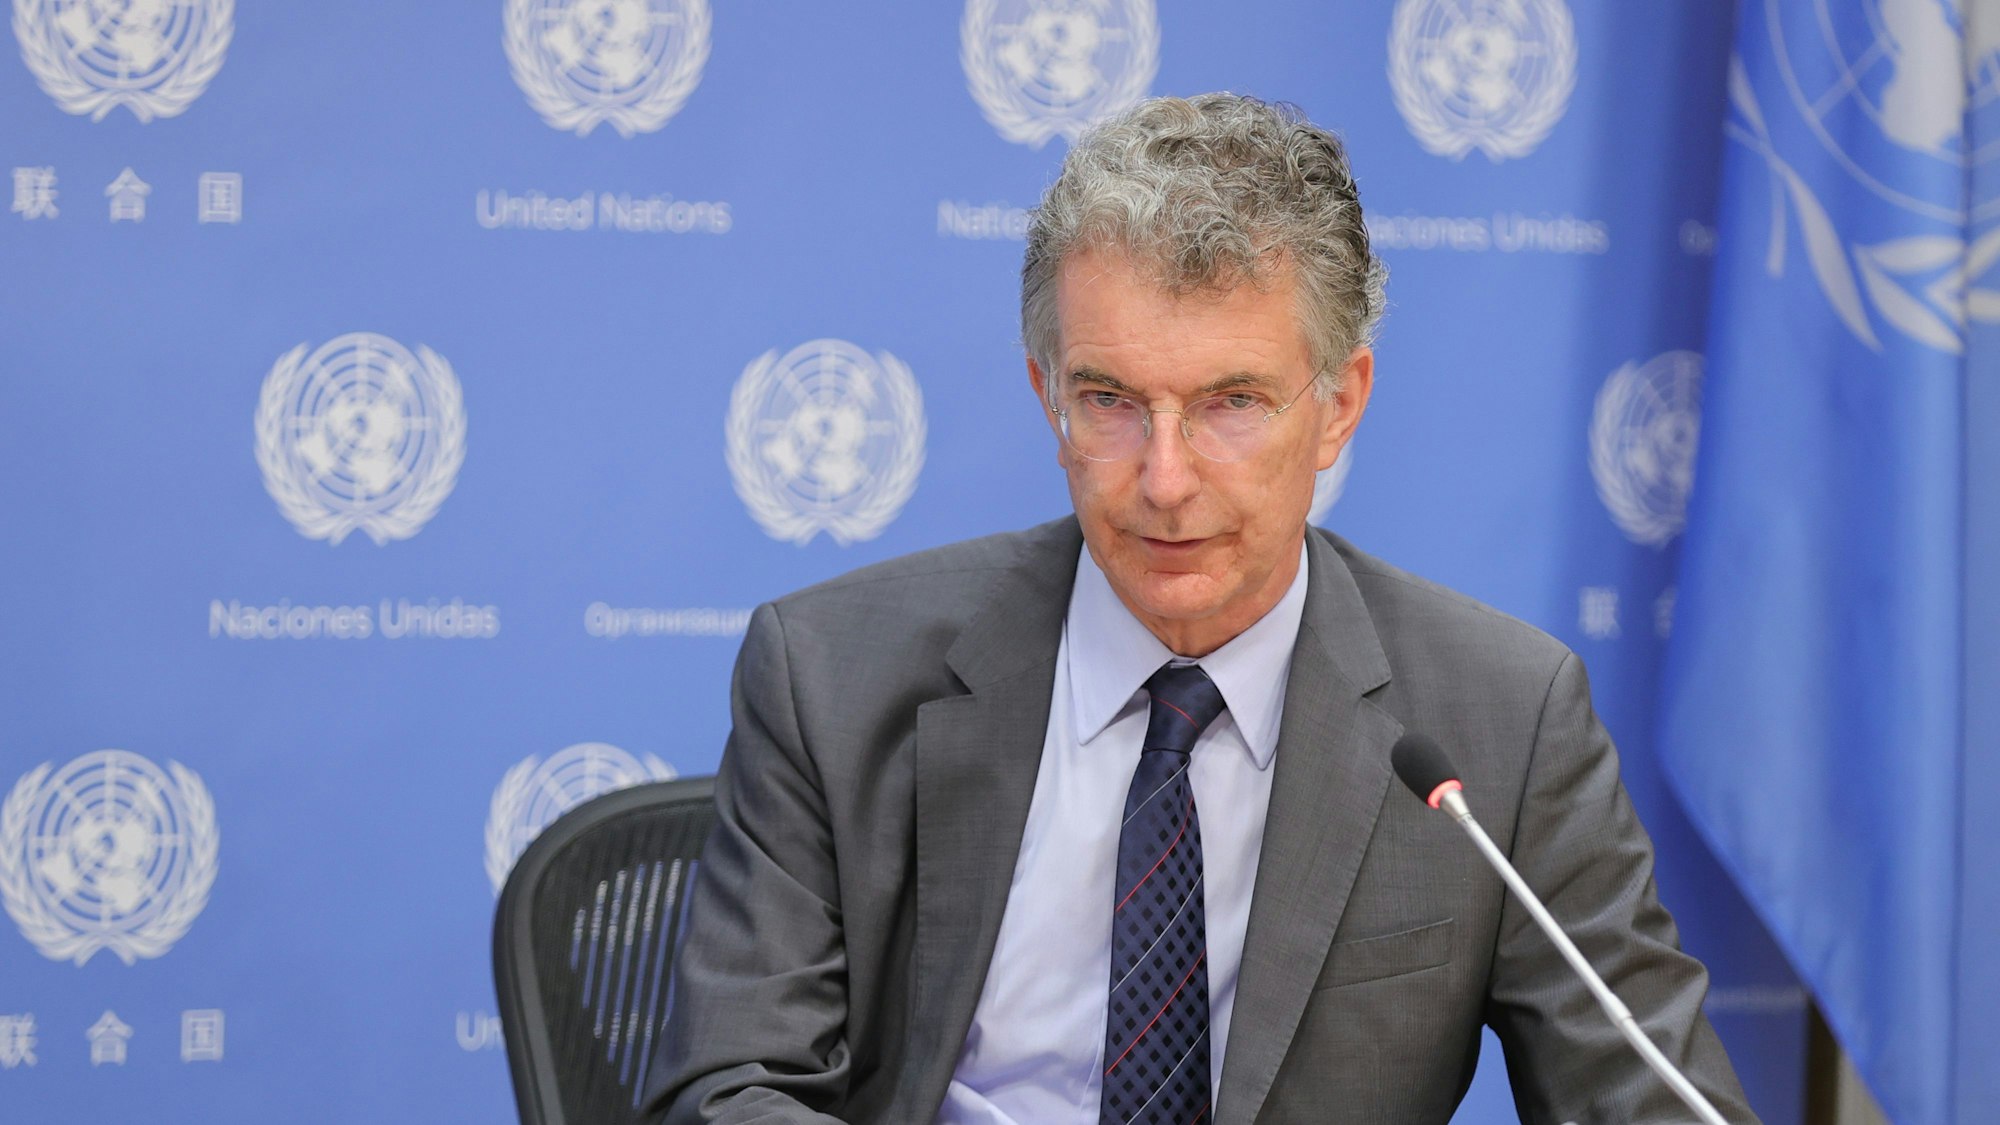 Christoph Heusgen, der ehemalige deutsche UN-Botschafter, gibt im UN-Hauptquartier in New York eine Pressekonferenz